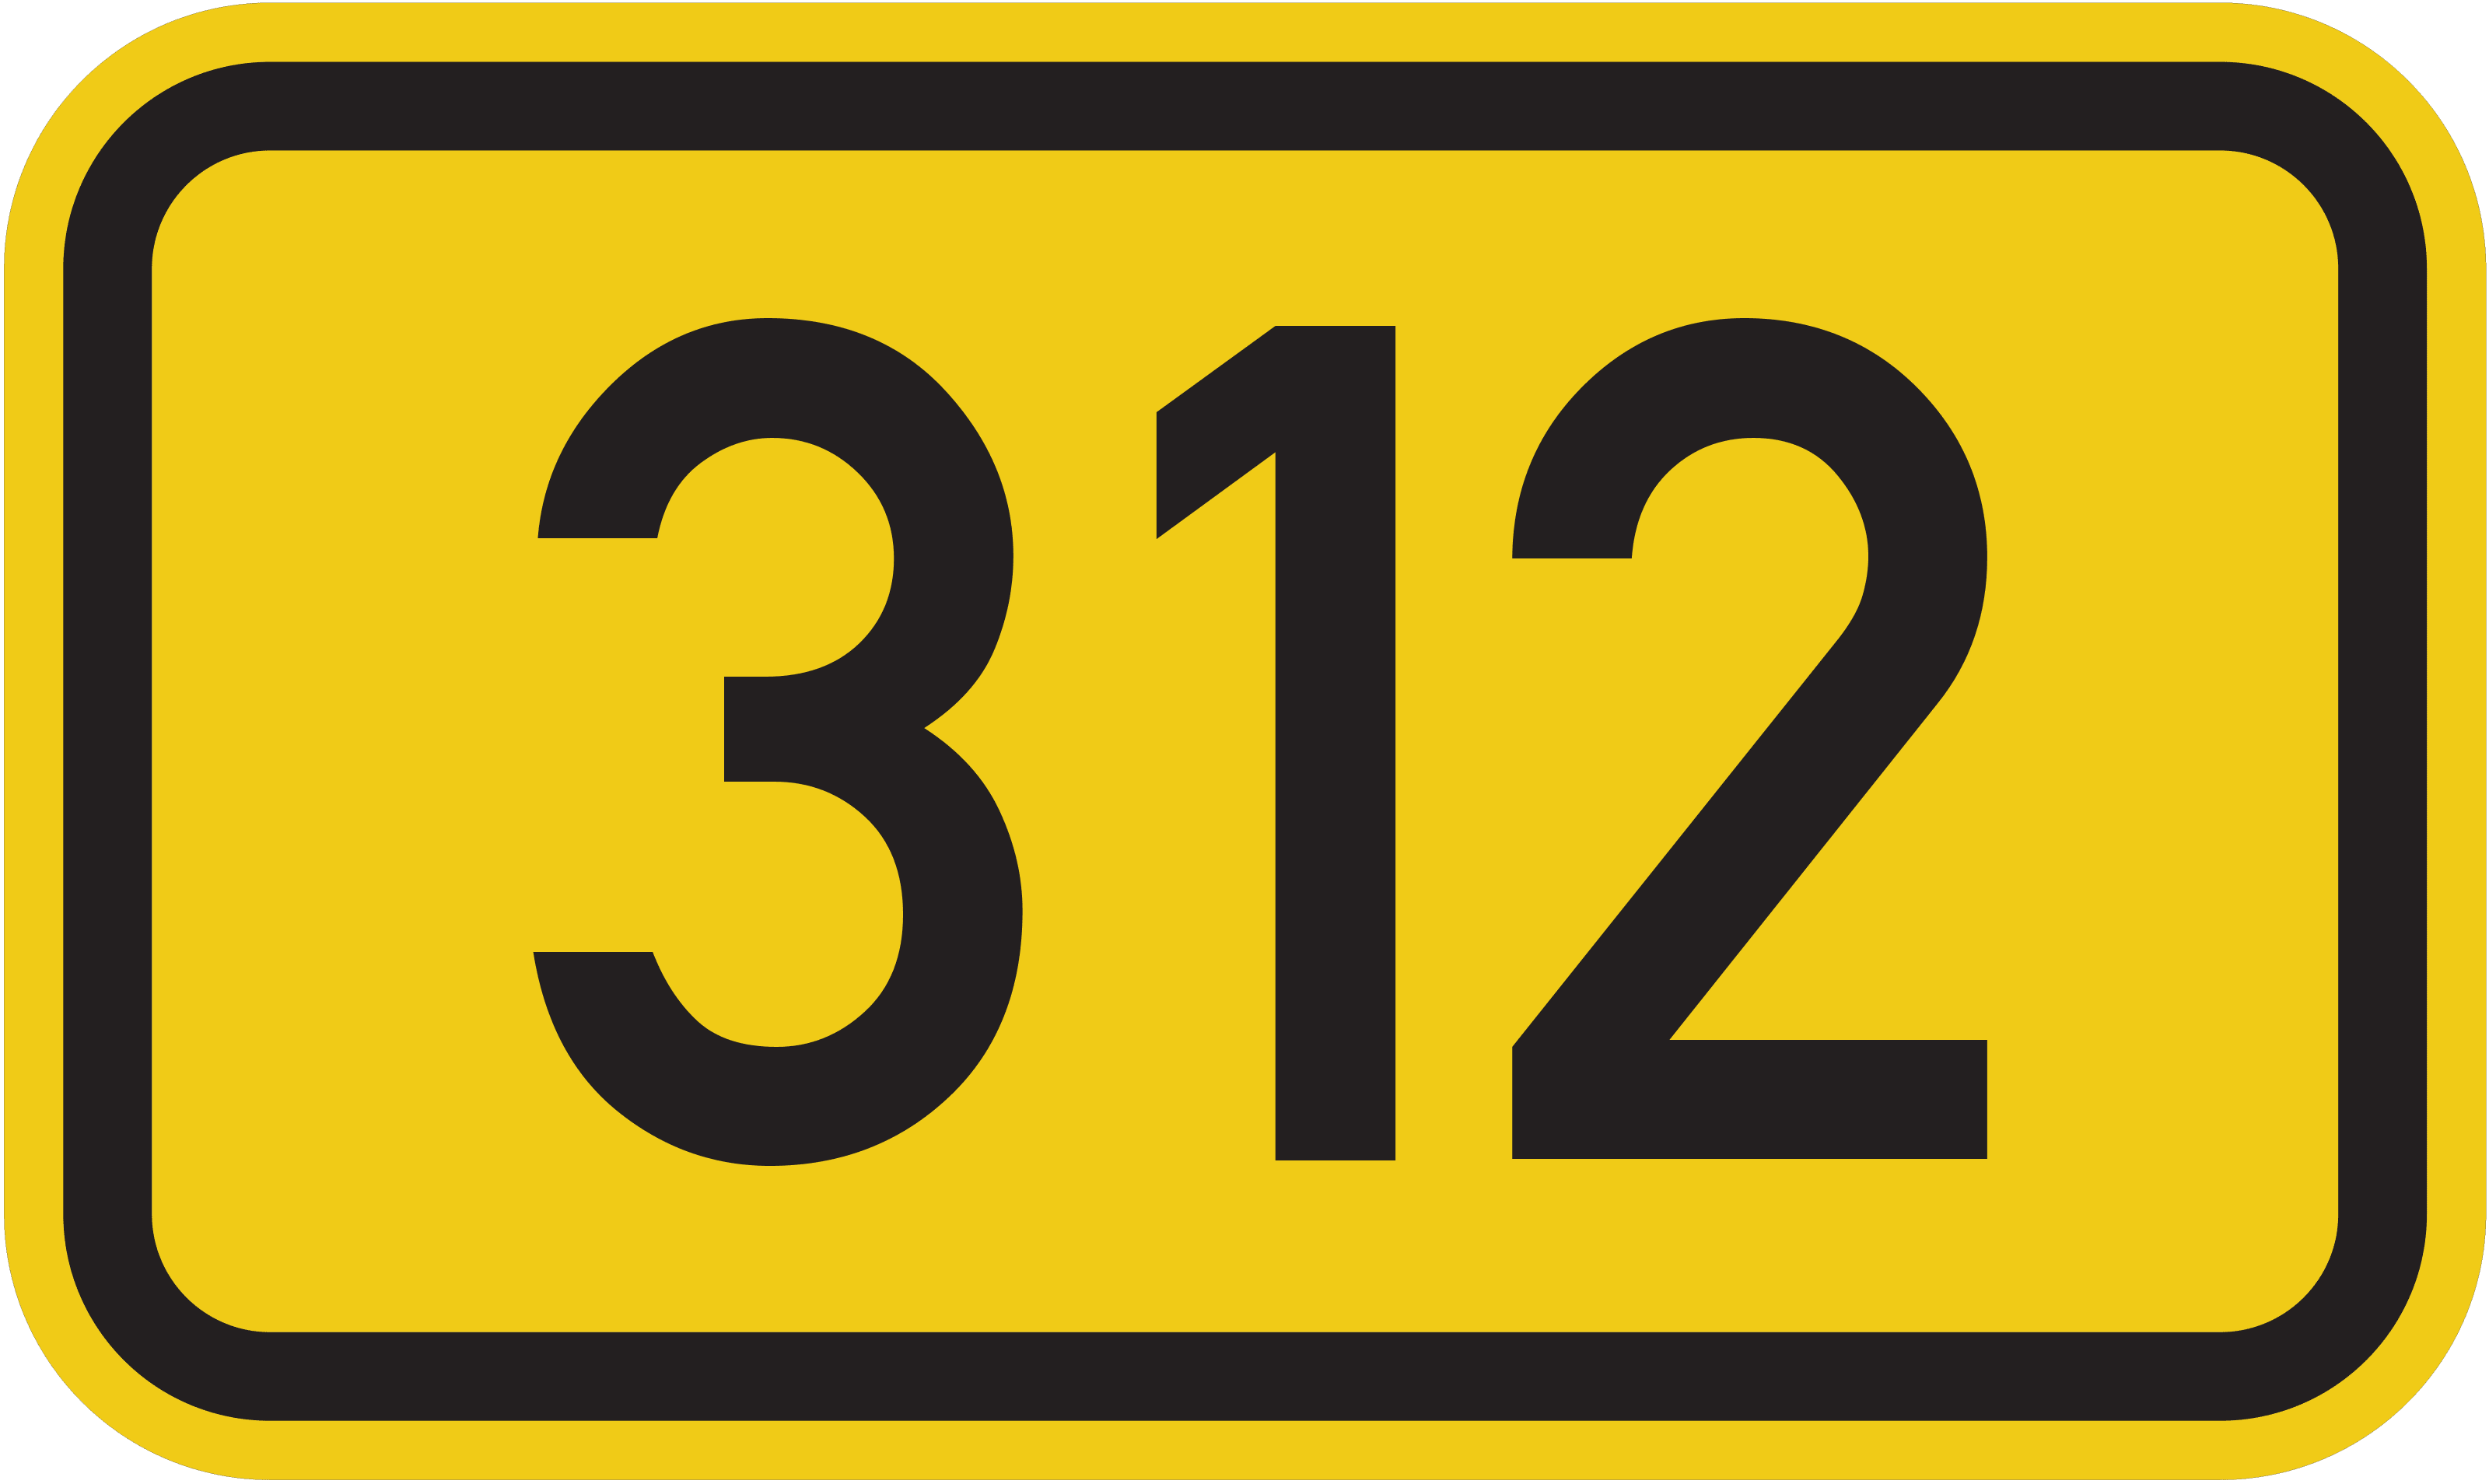 Bundesstraße B 312